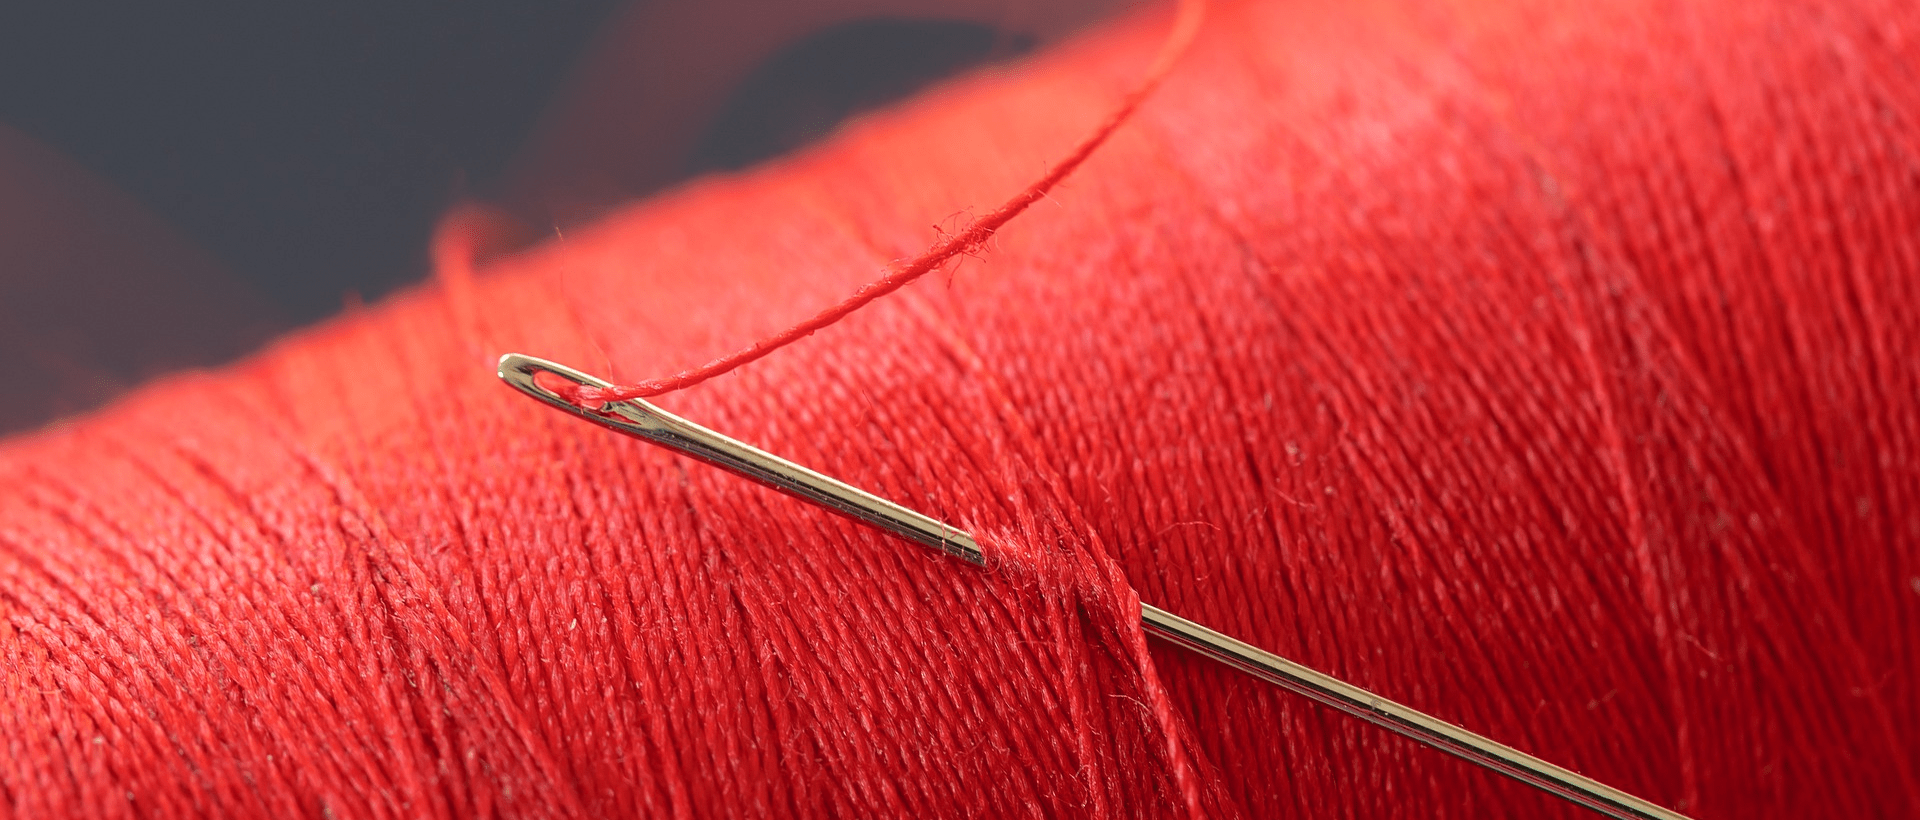 Ein roter Faden mit Nadel steht repräsentativ für den roten Faden im Storytelling